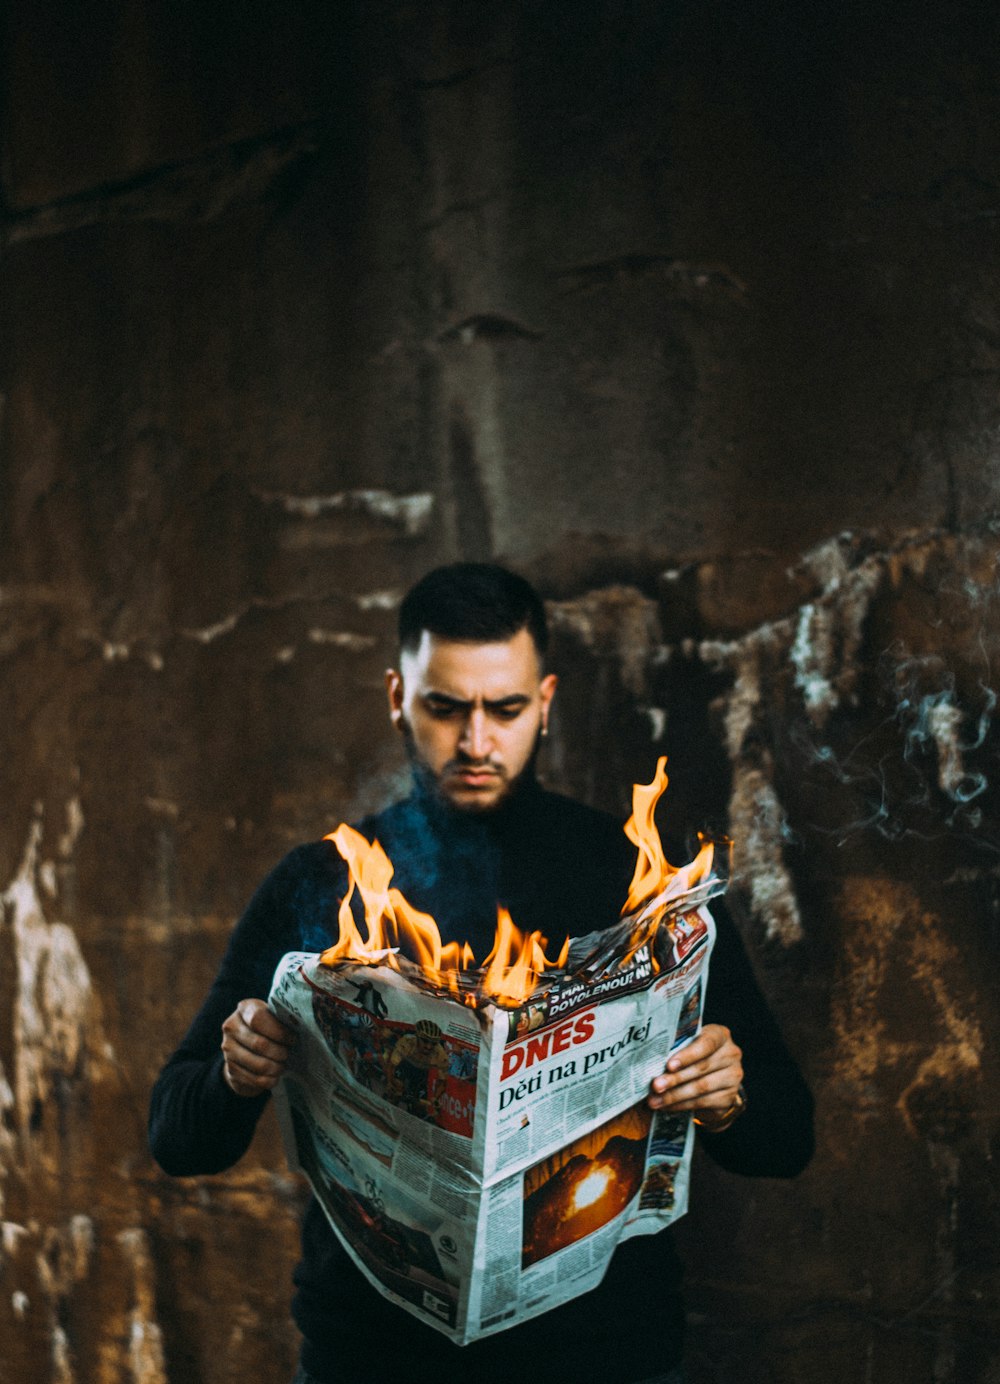 燃えている新聞を持っている男